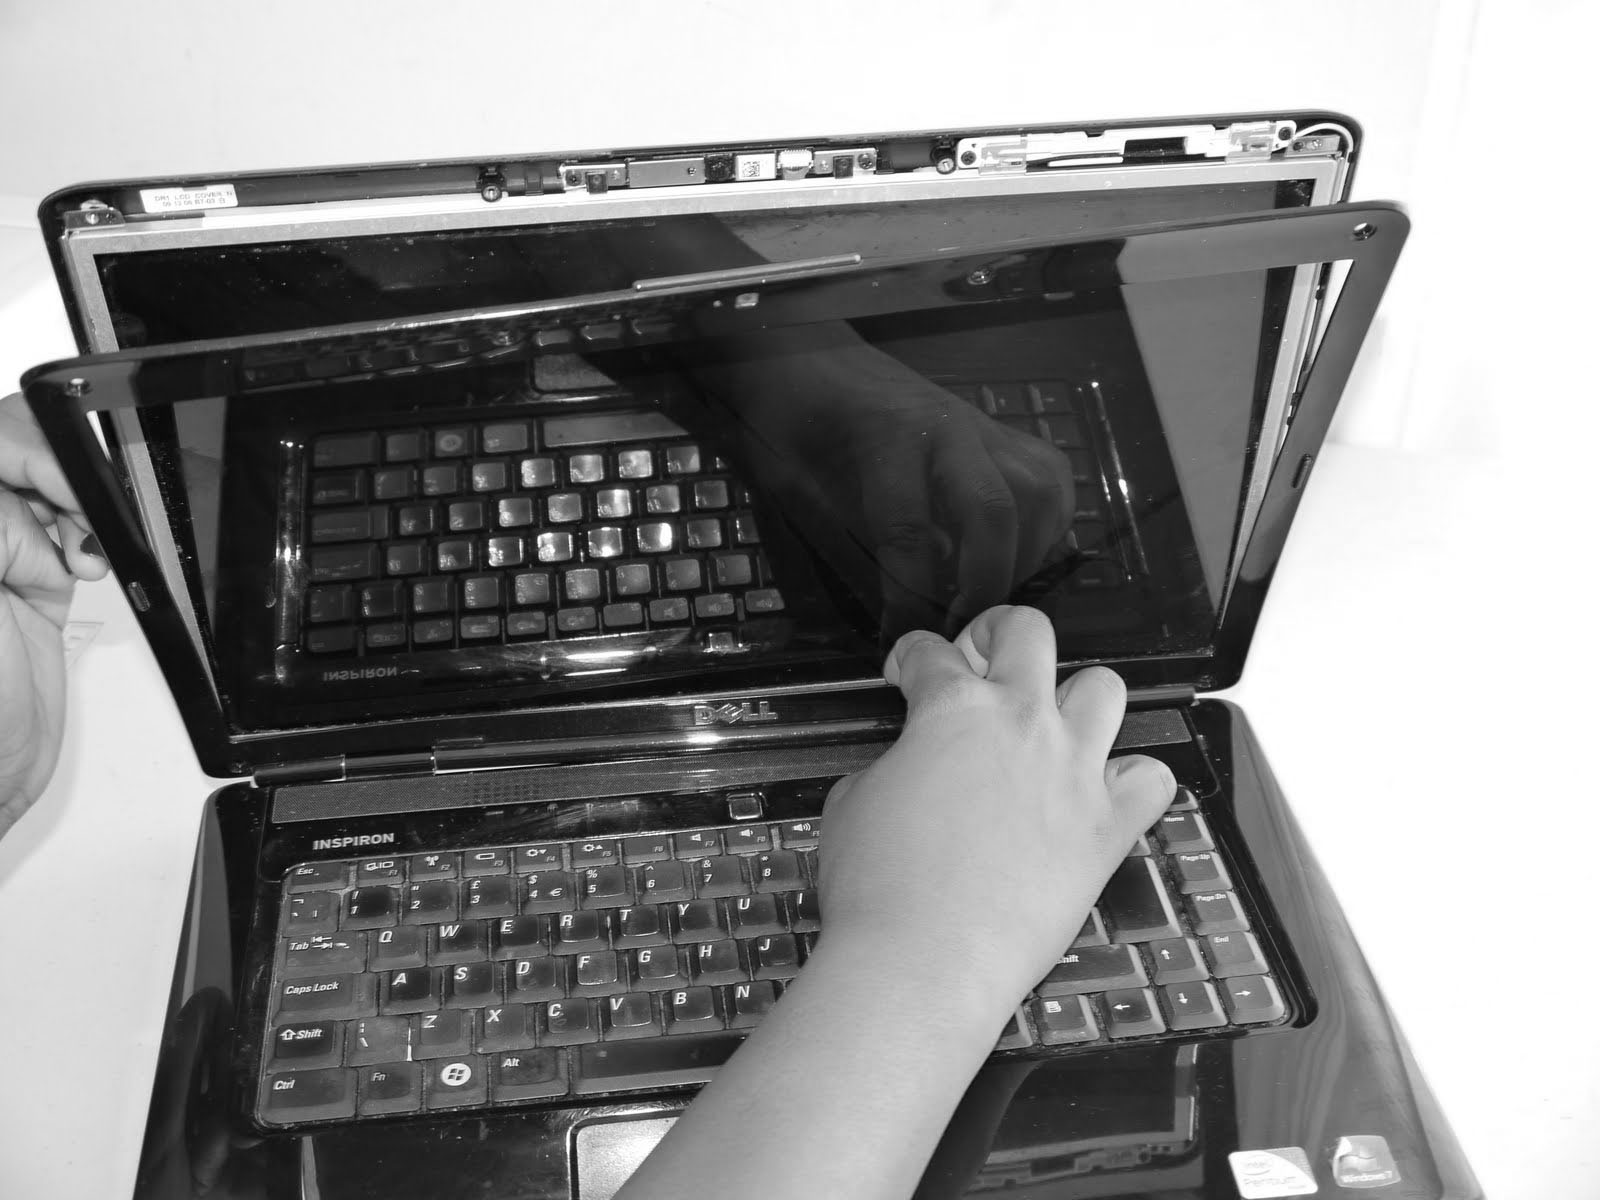 acer laptop screen, screen damage, screen repair, screen broken, screen repair images